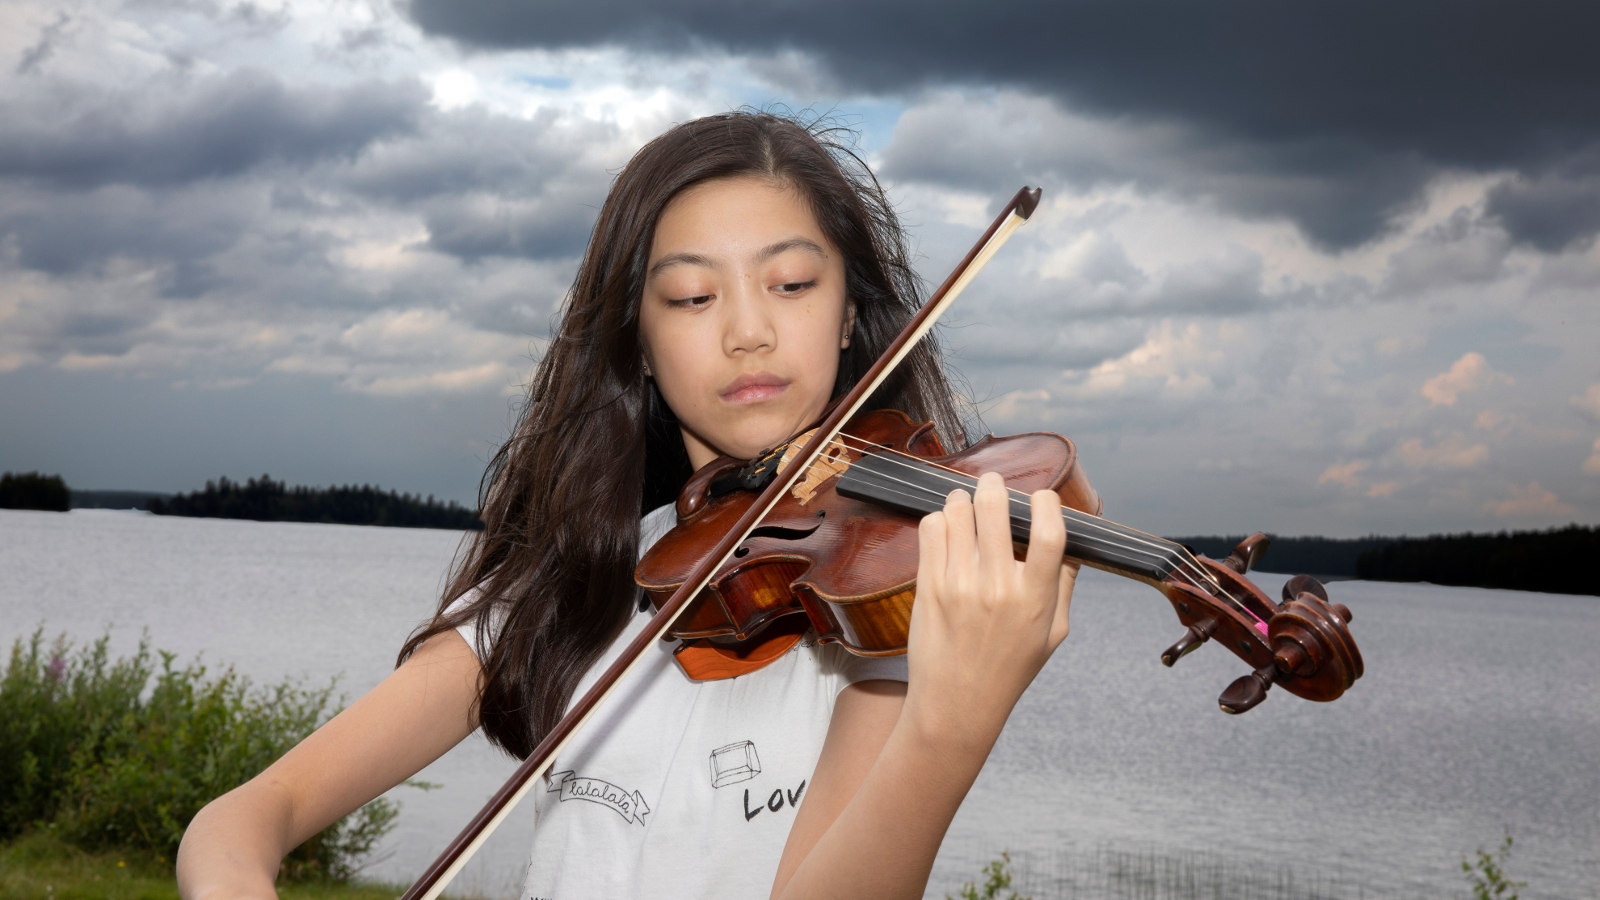 Kuvassa on nuori viulistioppilas Hannah Tam, jolla on mustat pitkät hiukset ja  soittaa viulua. Hänestä on puolivartalokuva ja  päällään valkoinen t-paita, jossa lukee mm. love. Taustalla on järvimaisemä ja ylimpänä tumman harmaa pilvi ja muu taivas oli puolipilvinen.   